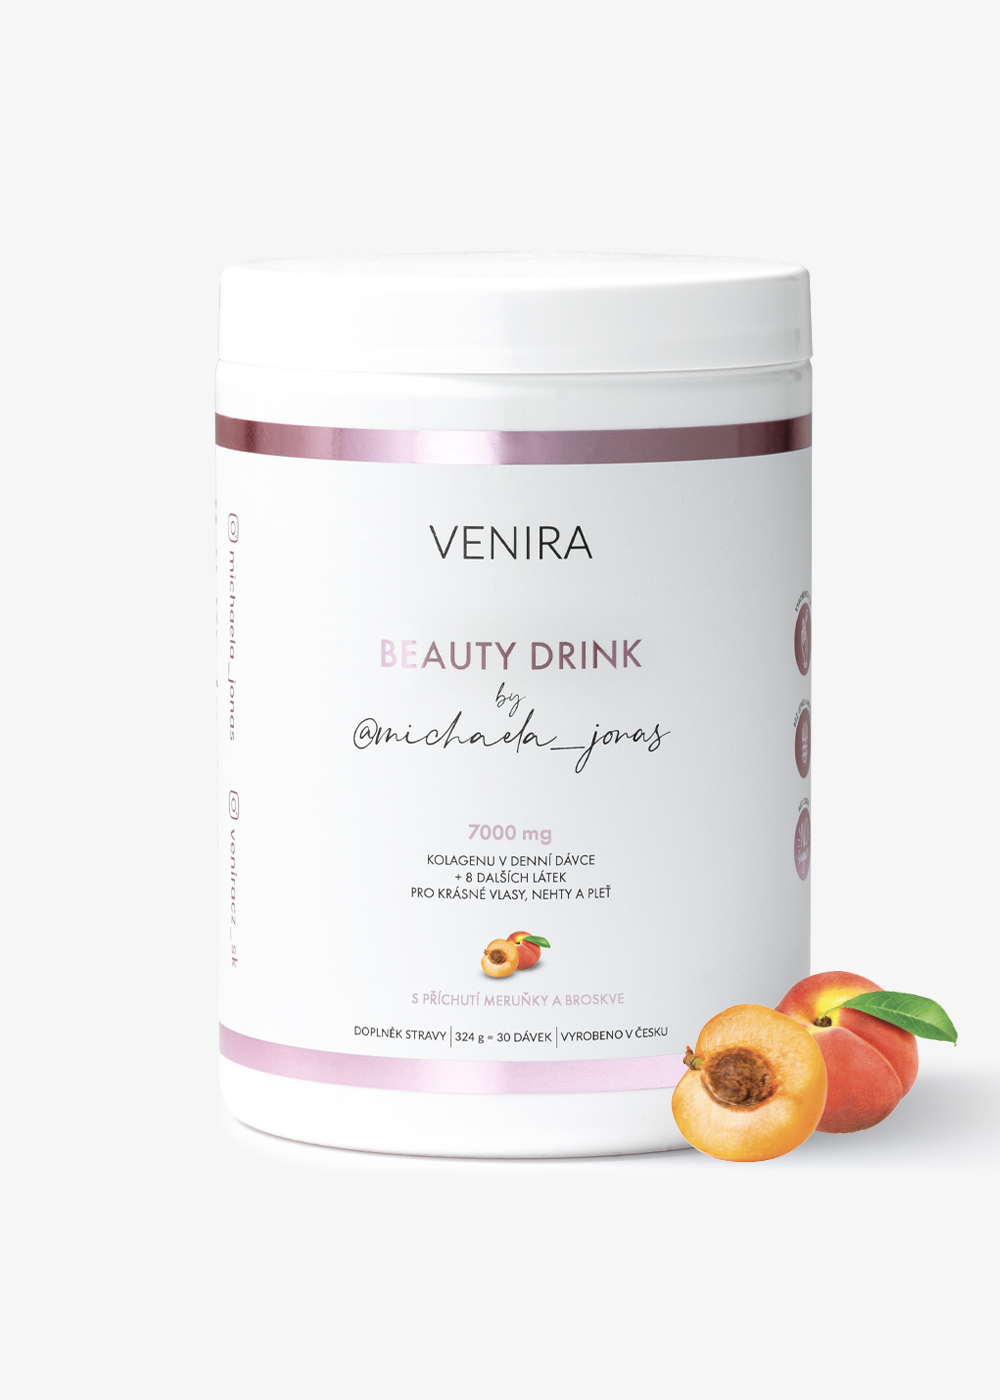 VENIRA beauty drink by @michaela_jonas, marhuľa a broskyňa, 324 g broskyňa-marhuľa, 324 g